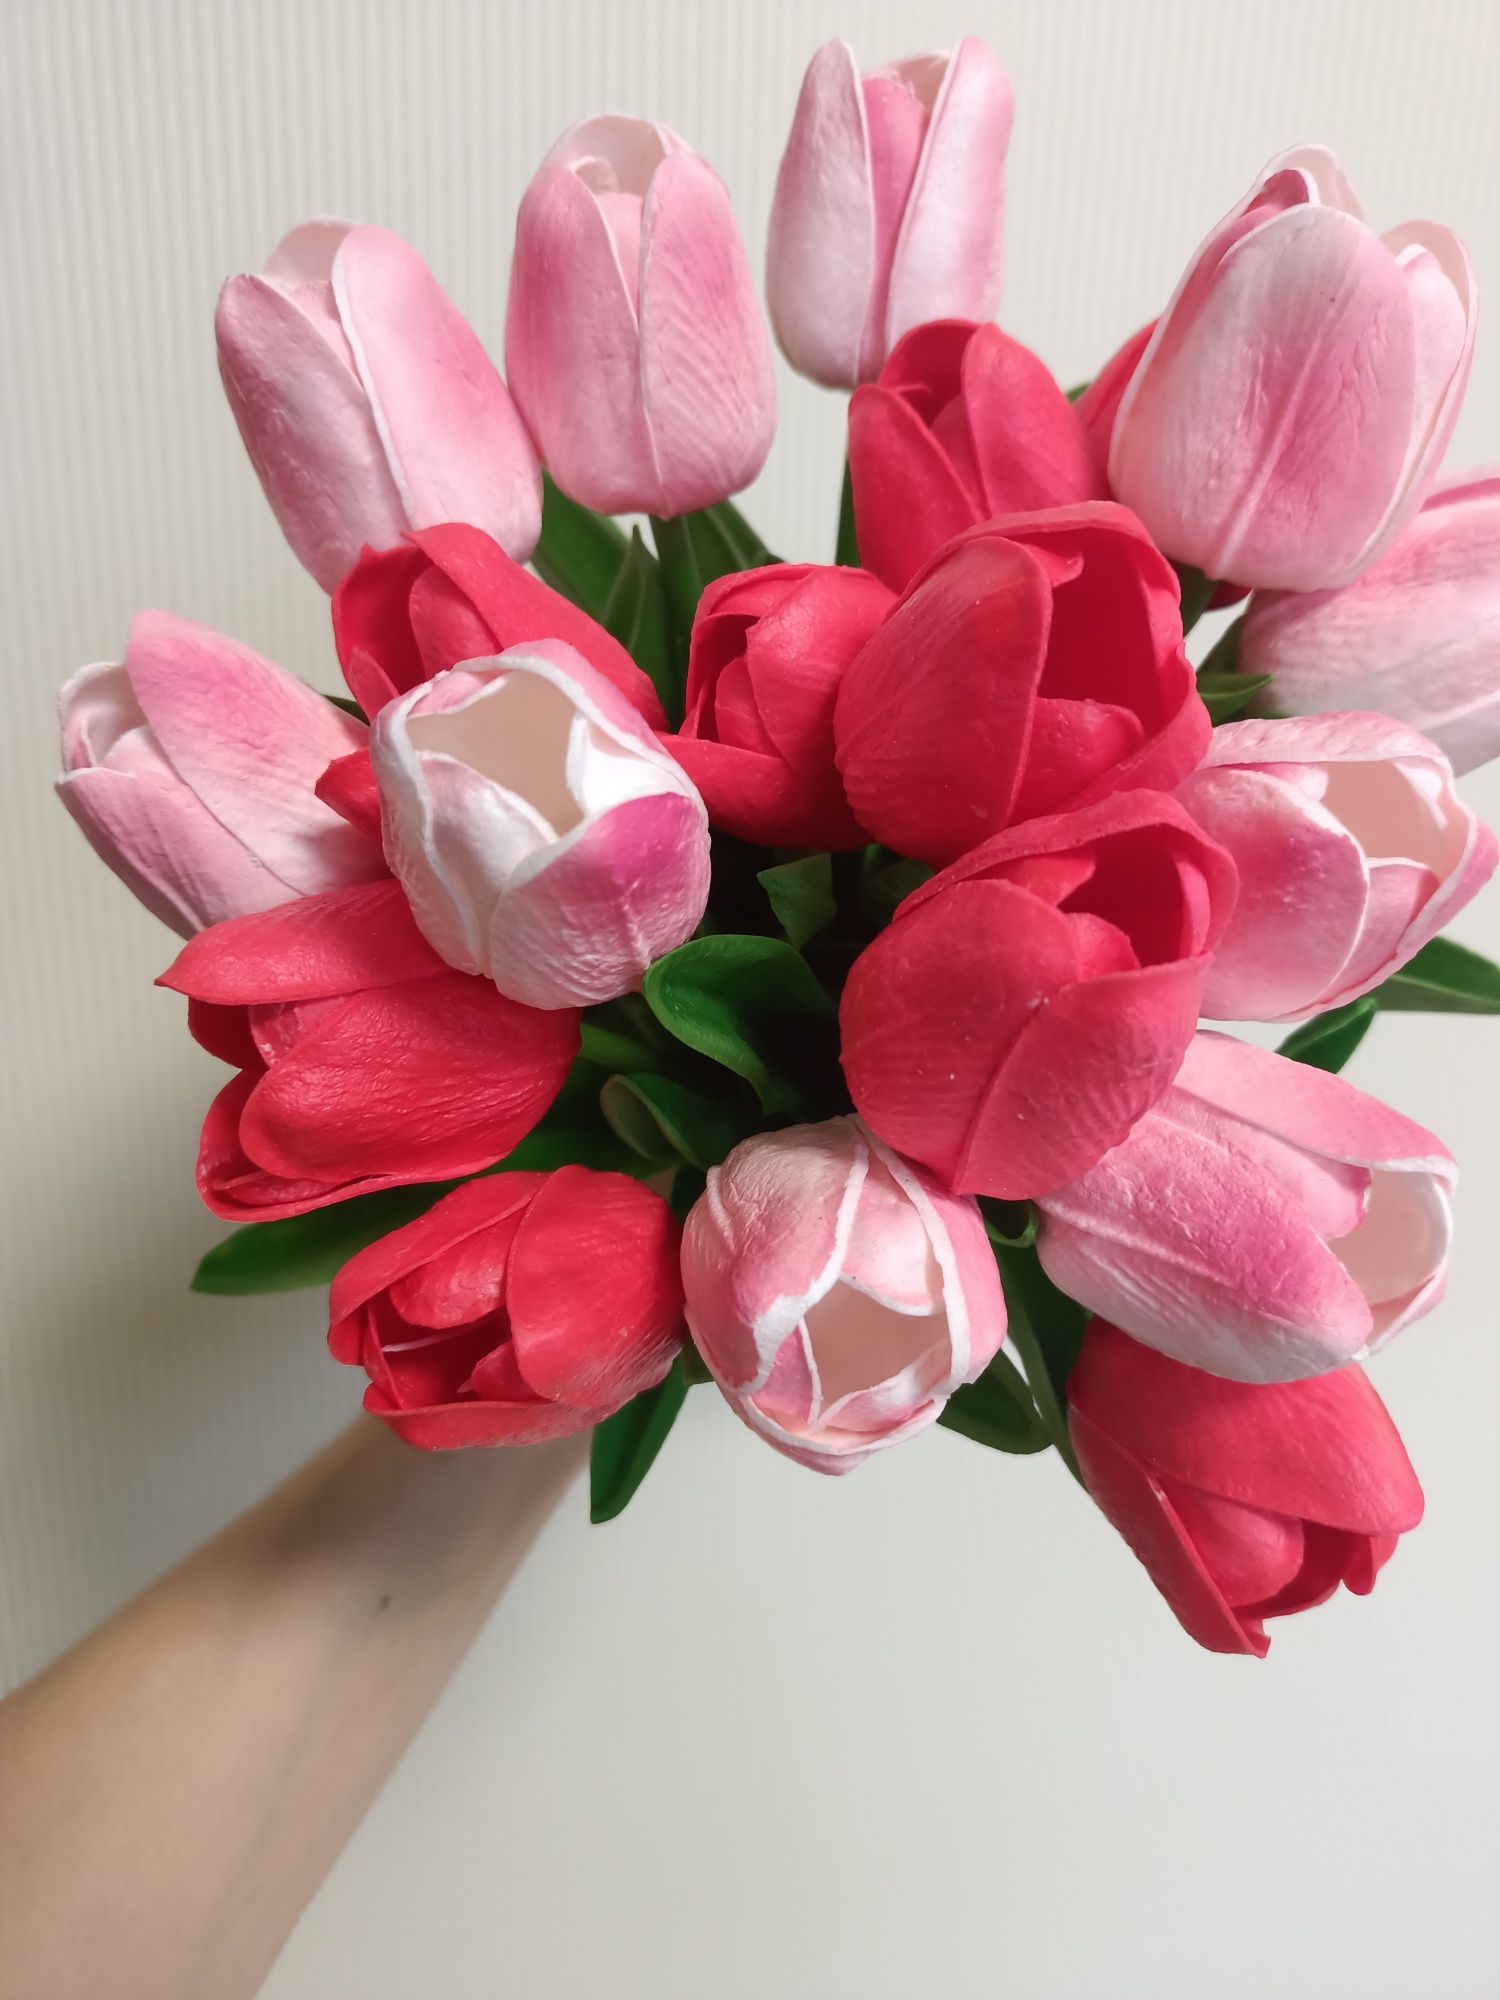 Штучні квіти тюльпани